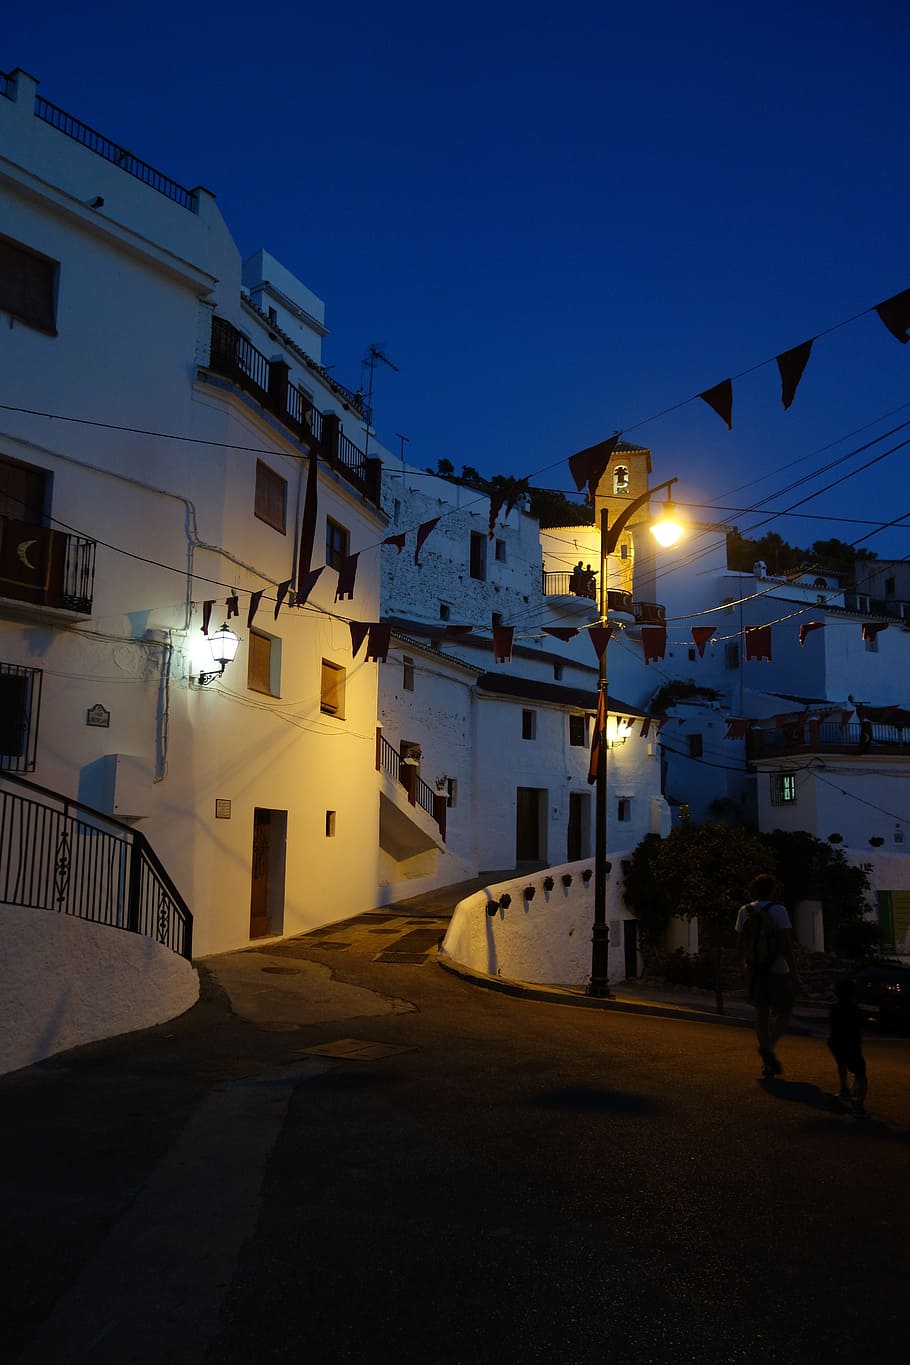 Noche, Andalucía, lámpara de pie, azul, blanco, luminaria, iluminación, pueblo, casas, resplandor